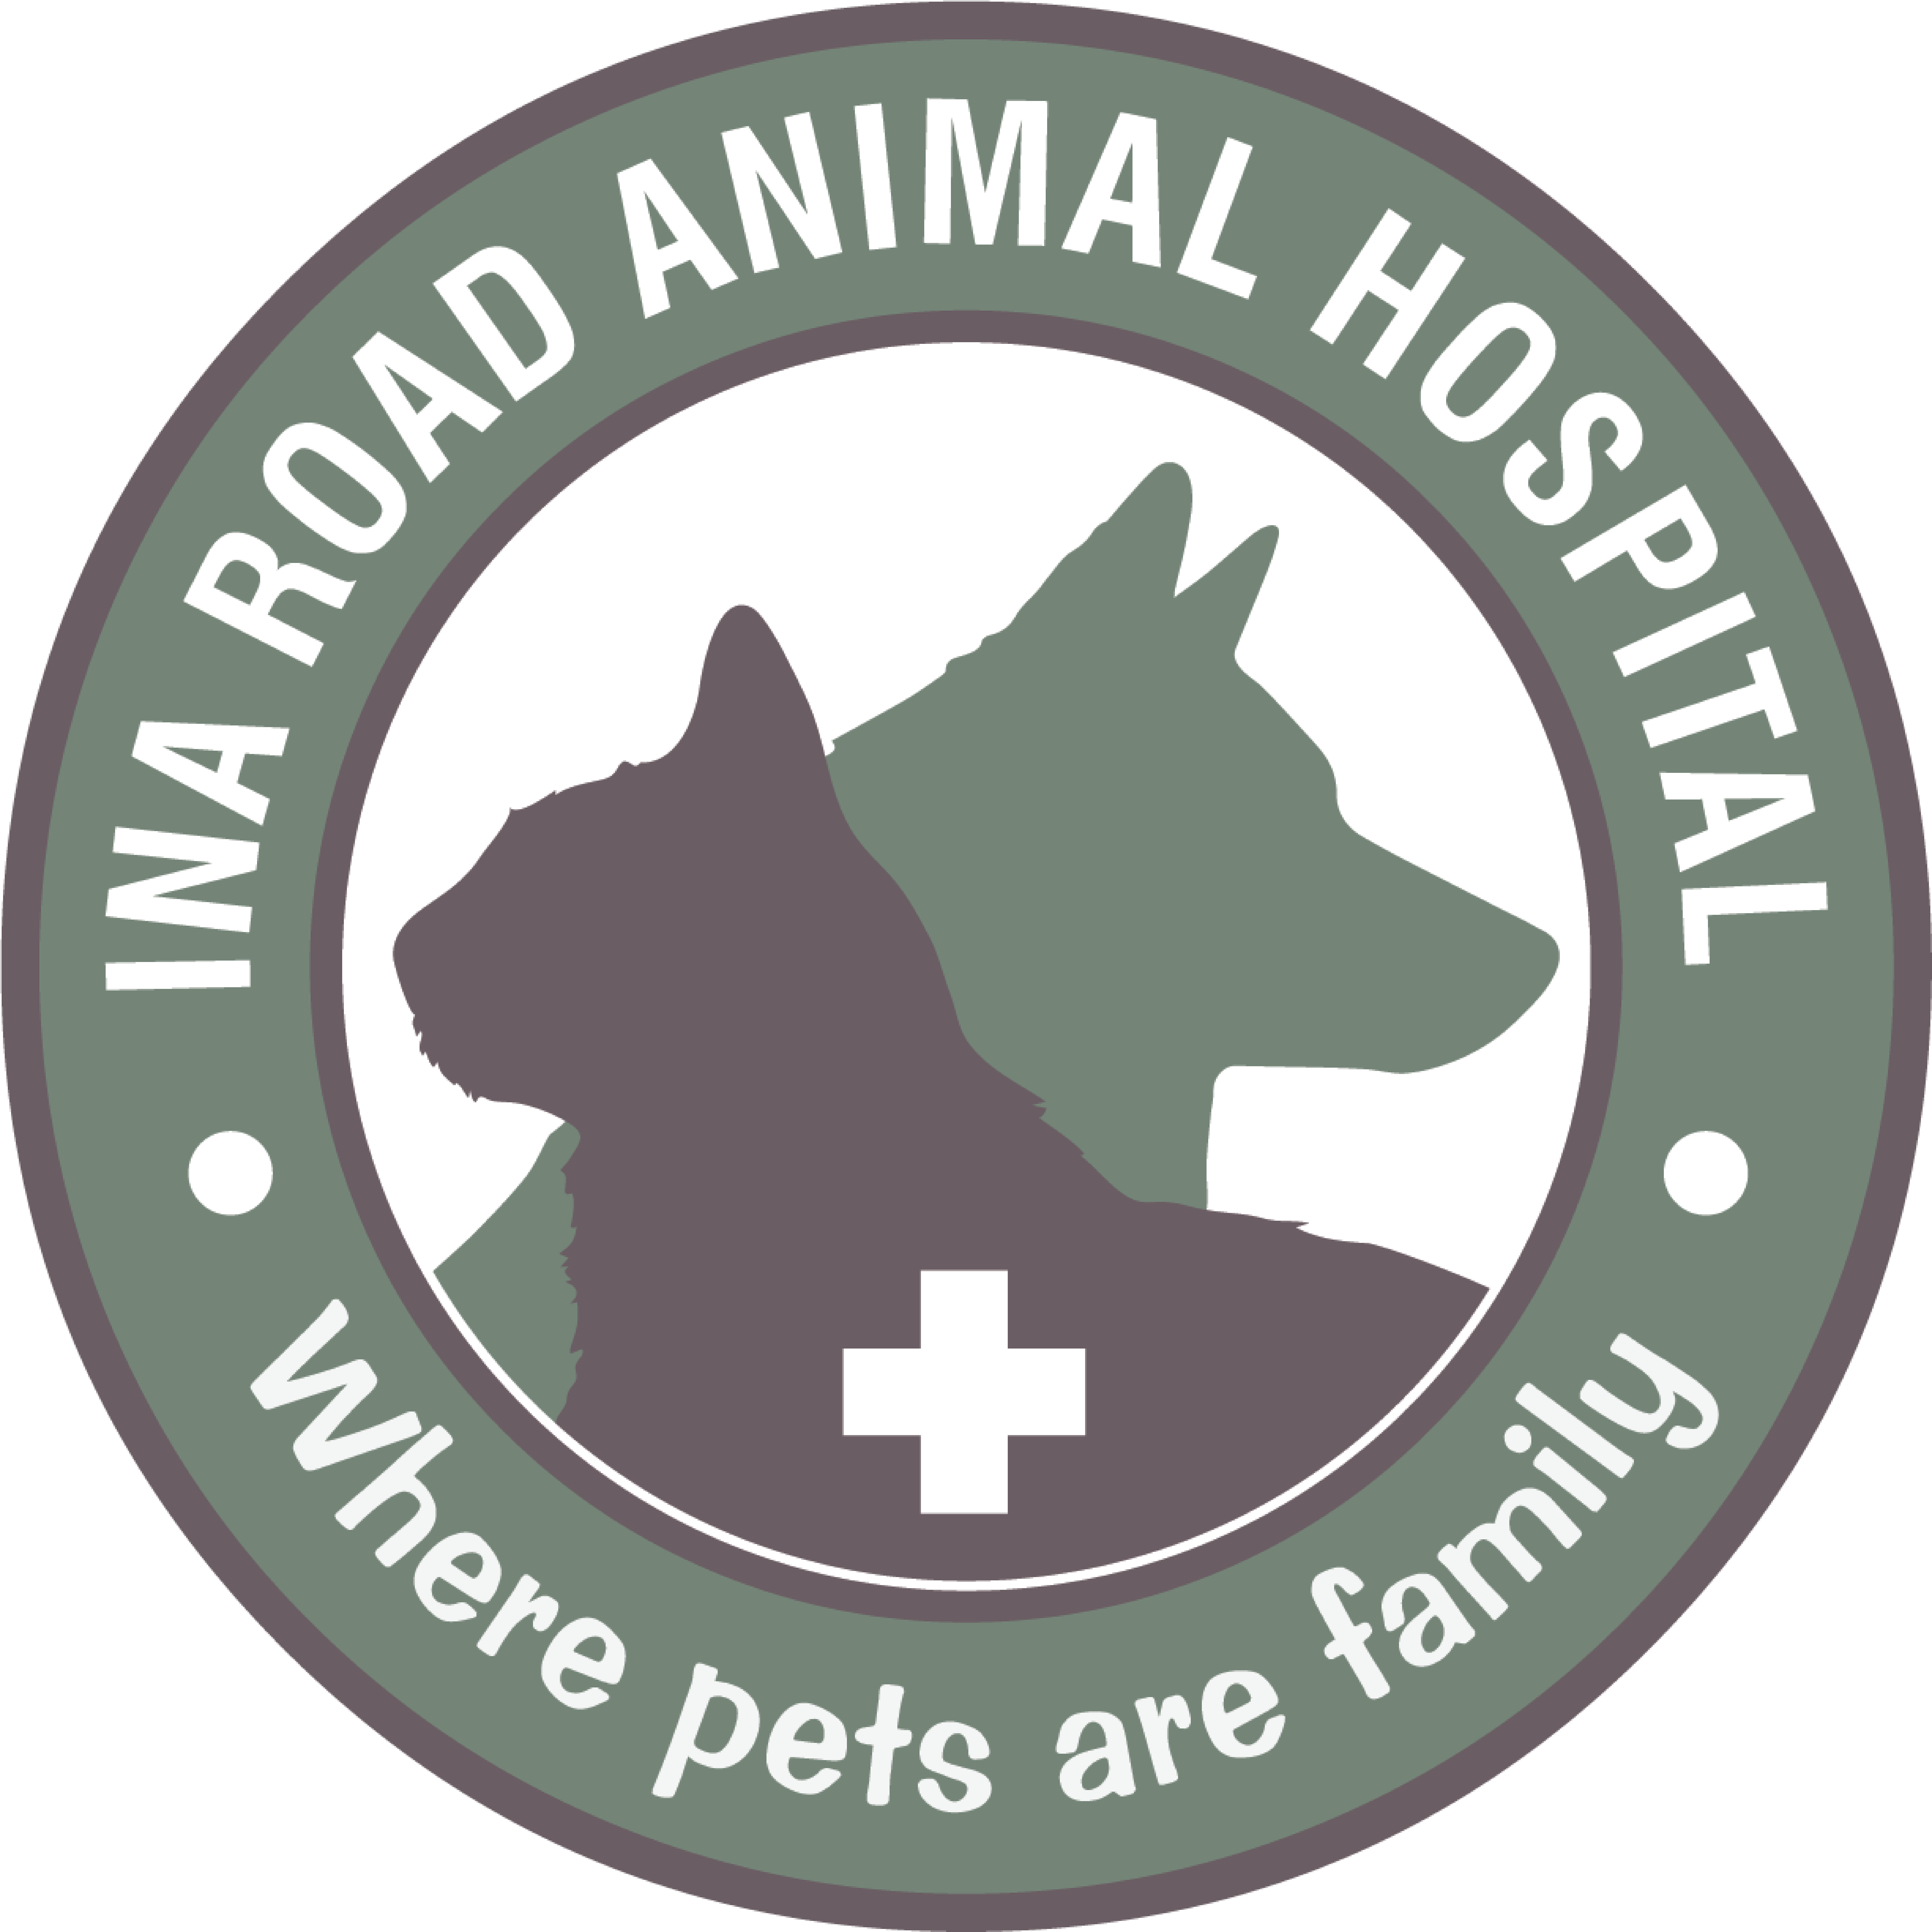 Ina Road Animal Hospital